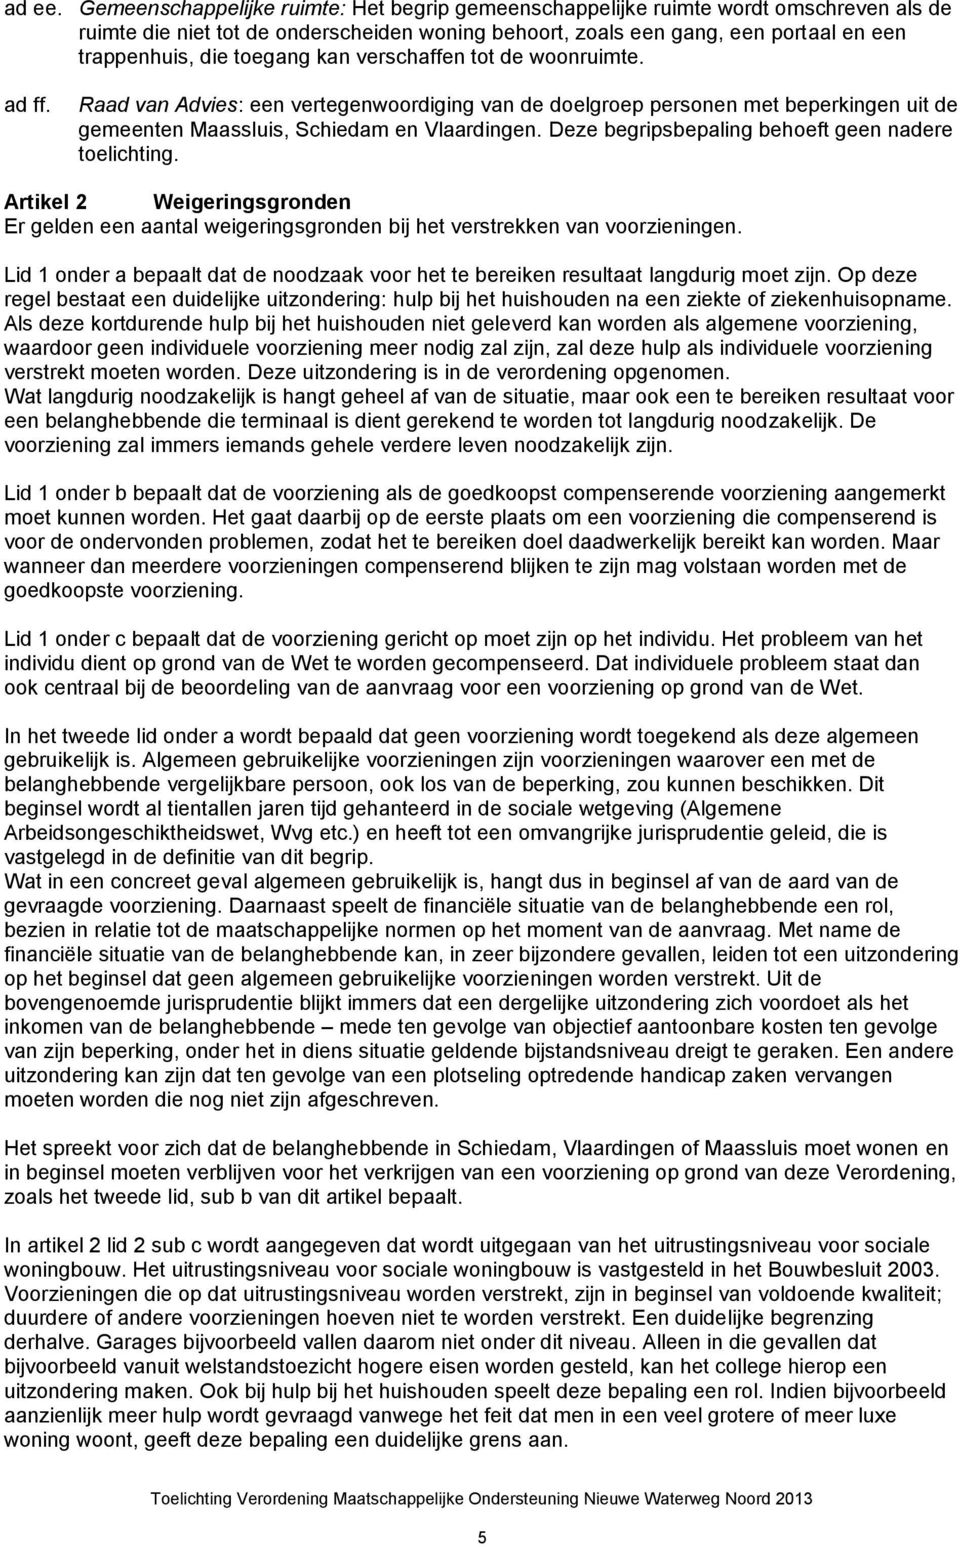 toegang kan verschaffen tot de woonruimte. ad ff. Raad van Advies: een vertegenwoordiging van de doelgroep personen met beperkingen uit de gemeenten Maassluis, Schiedam en Vlaardingen.